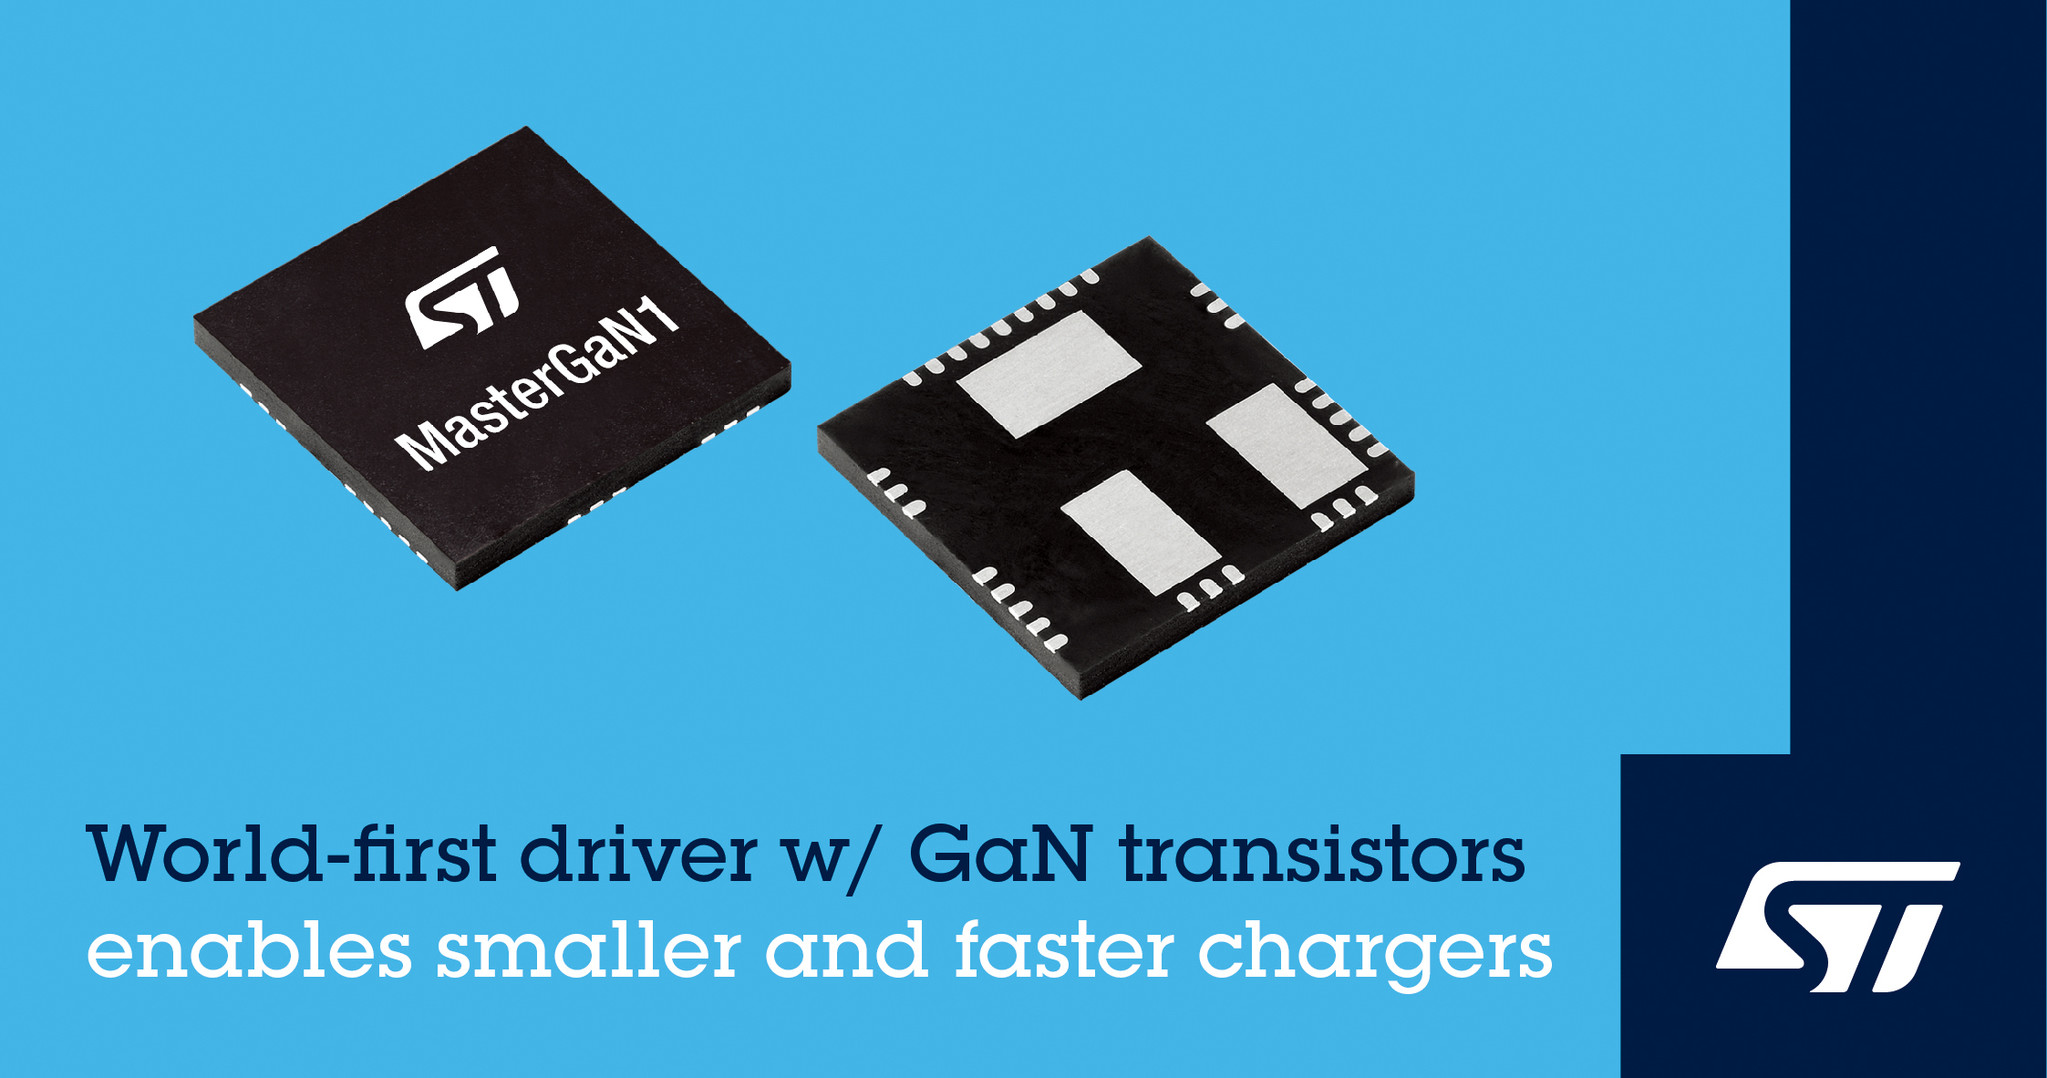 ゲート ドライバとgan パワー トランジスタを集積した世界初のソリューションを発表 Stマイクロエレクトロニクスのプレスリリース